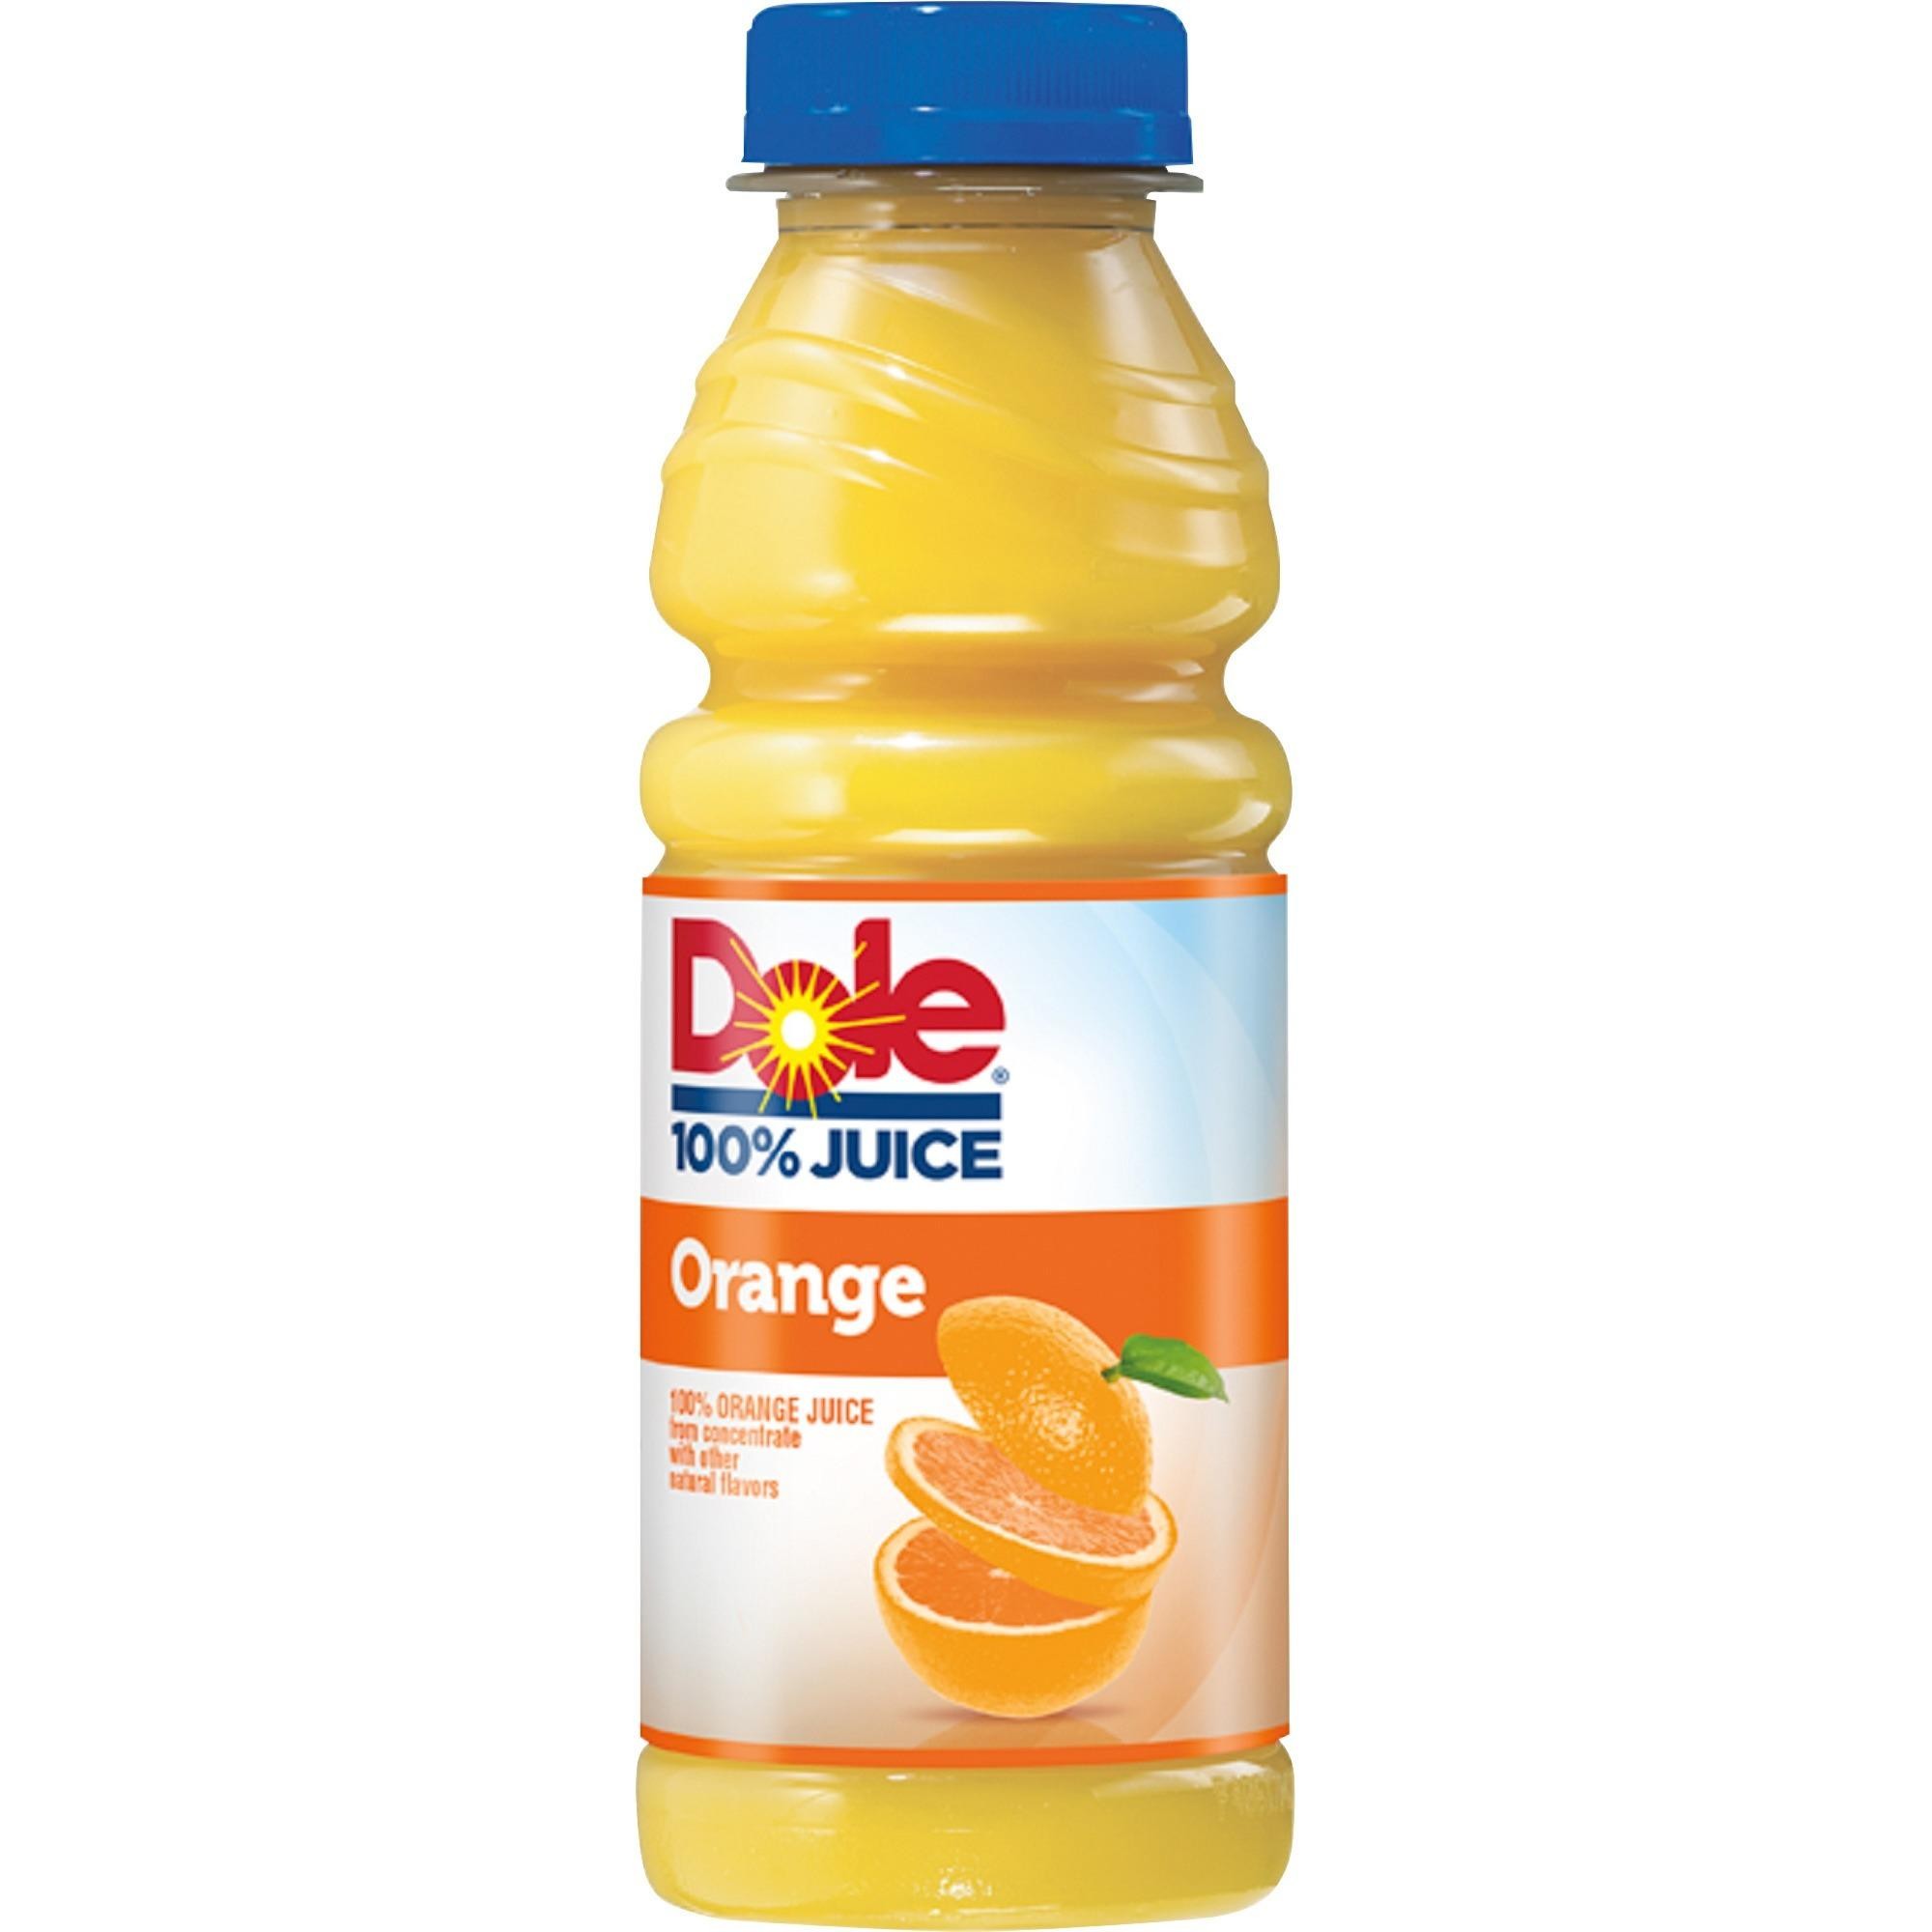 Dole Orange Juice 15.2oz